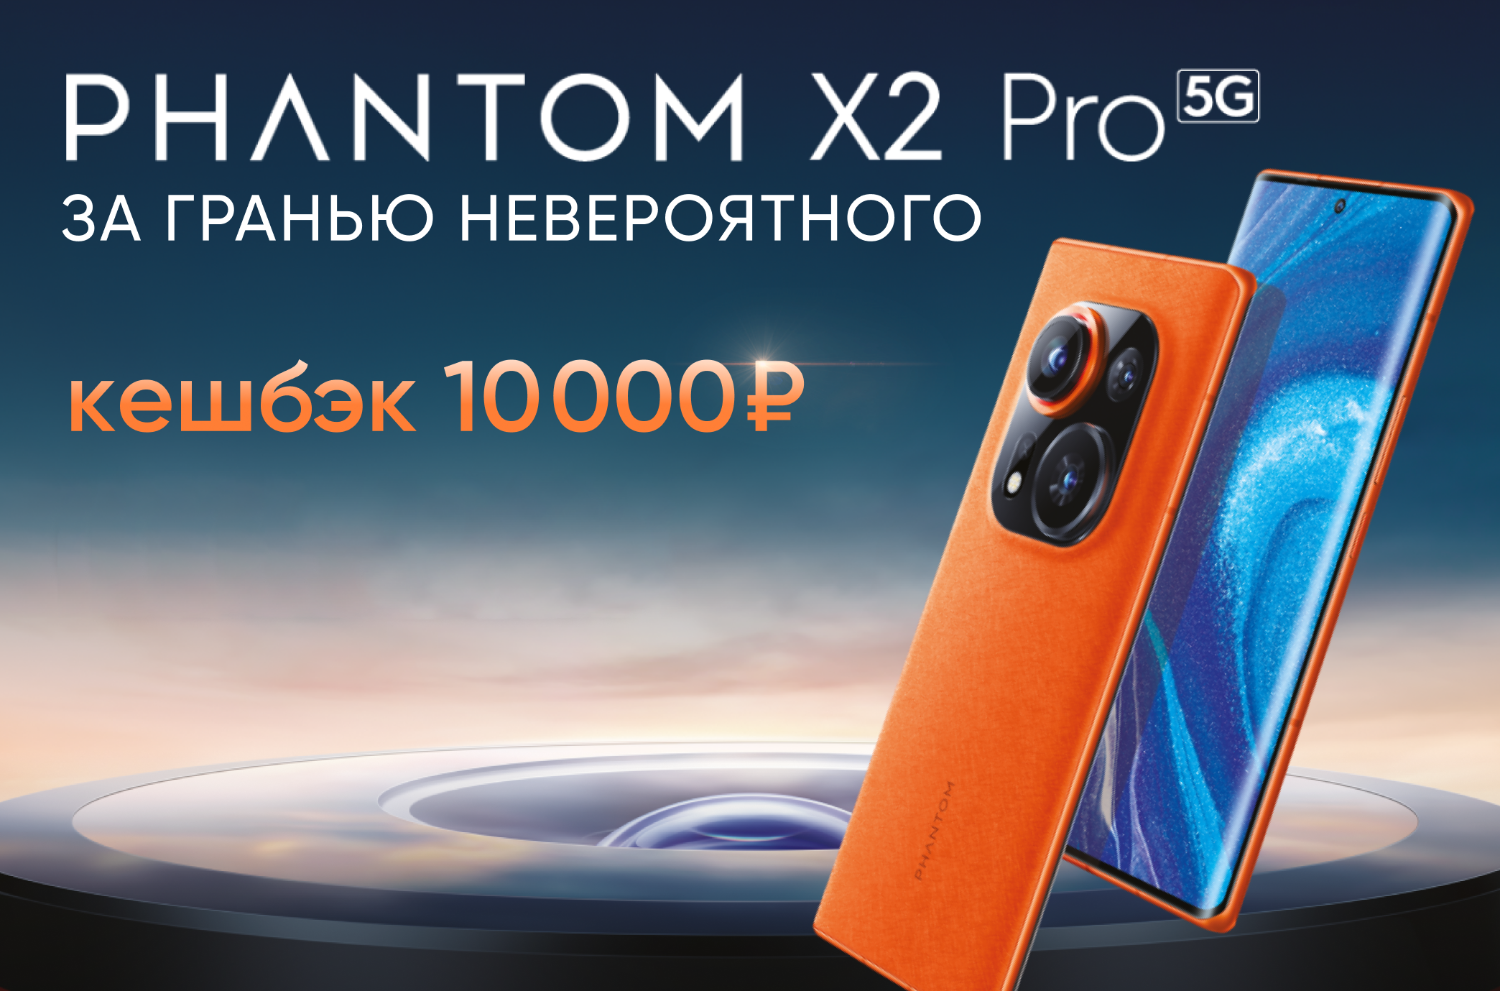 Tecno вернёт 10 тысяч рублей кешбэка в Ozon за покупку флагманского смартфона Phantom X2 Pro